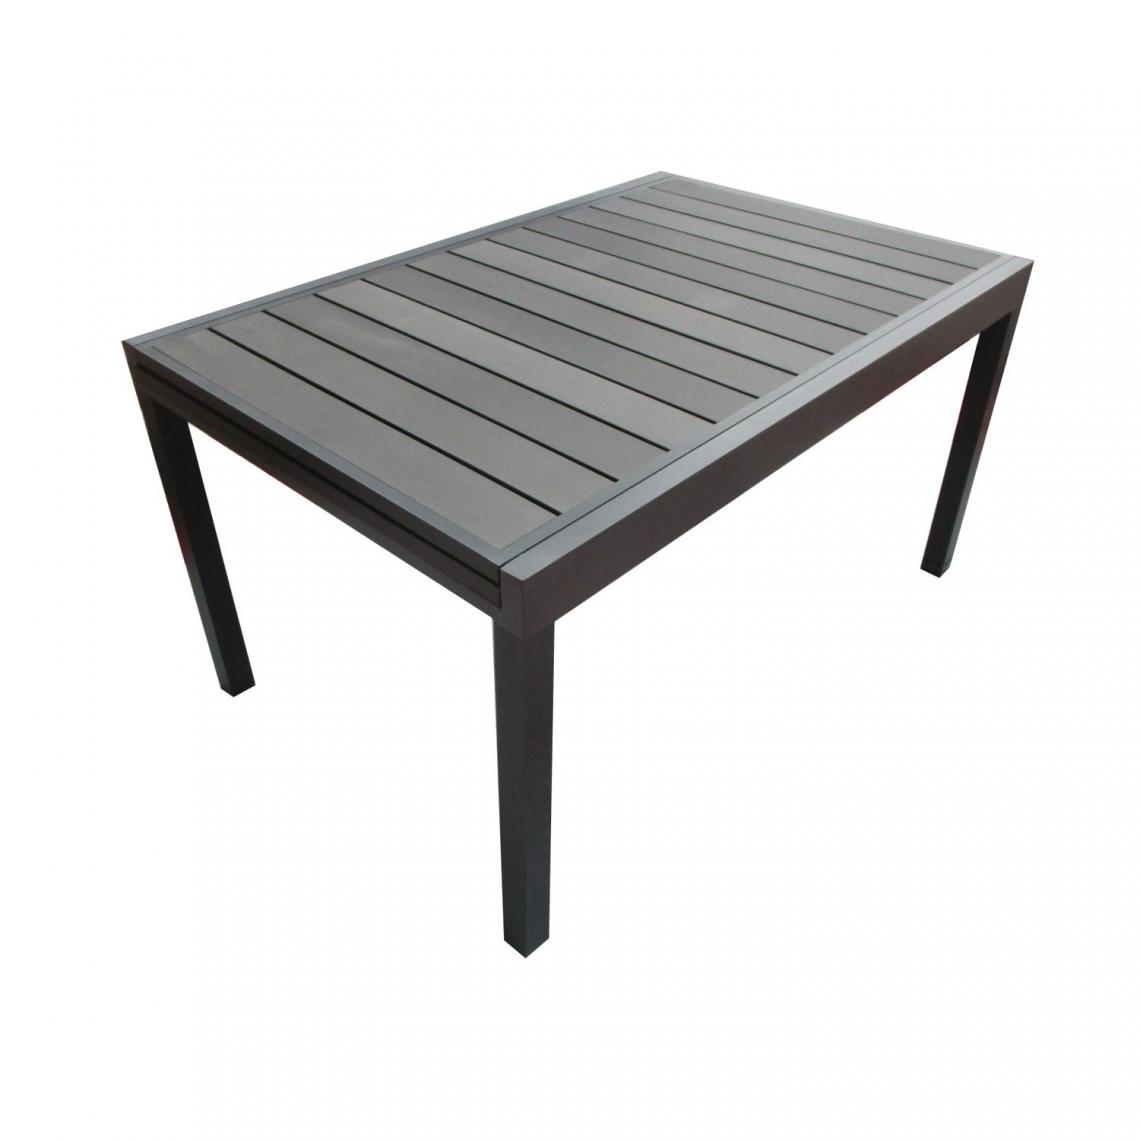 Toilinux - Table de jardin extensible en aluminium avec plateau composite Byron de 6 à 10 personnes - Gris Anthracite - Tables de jardin